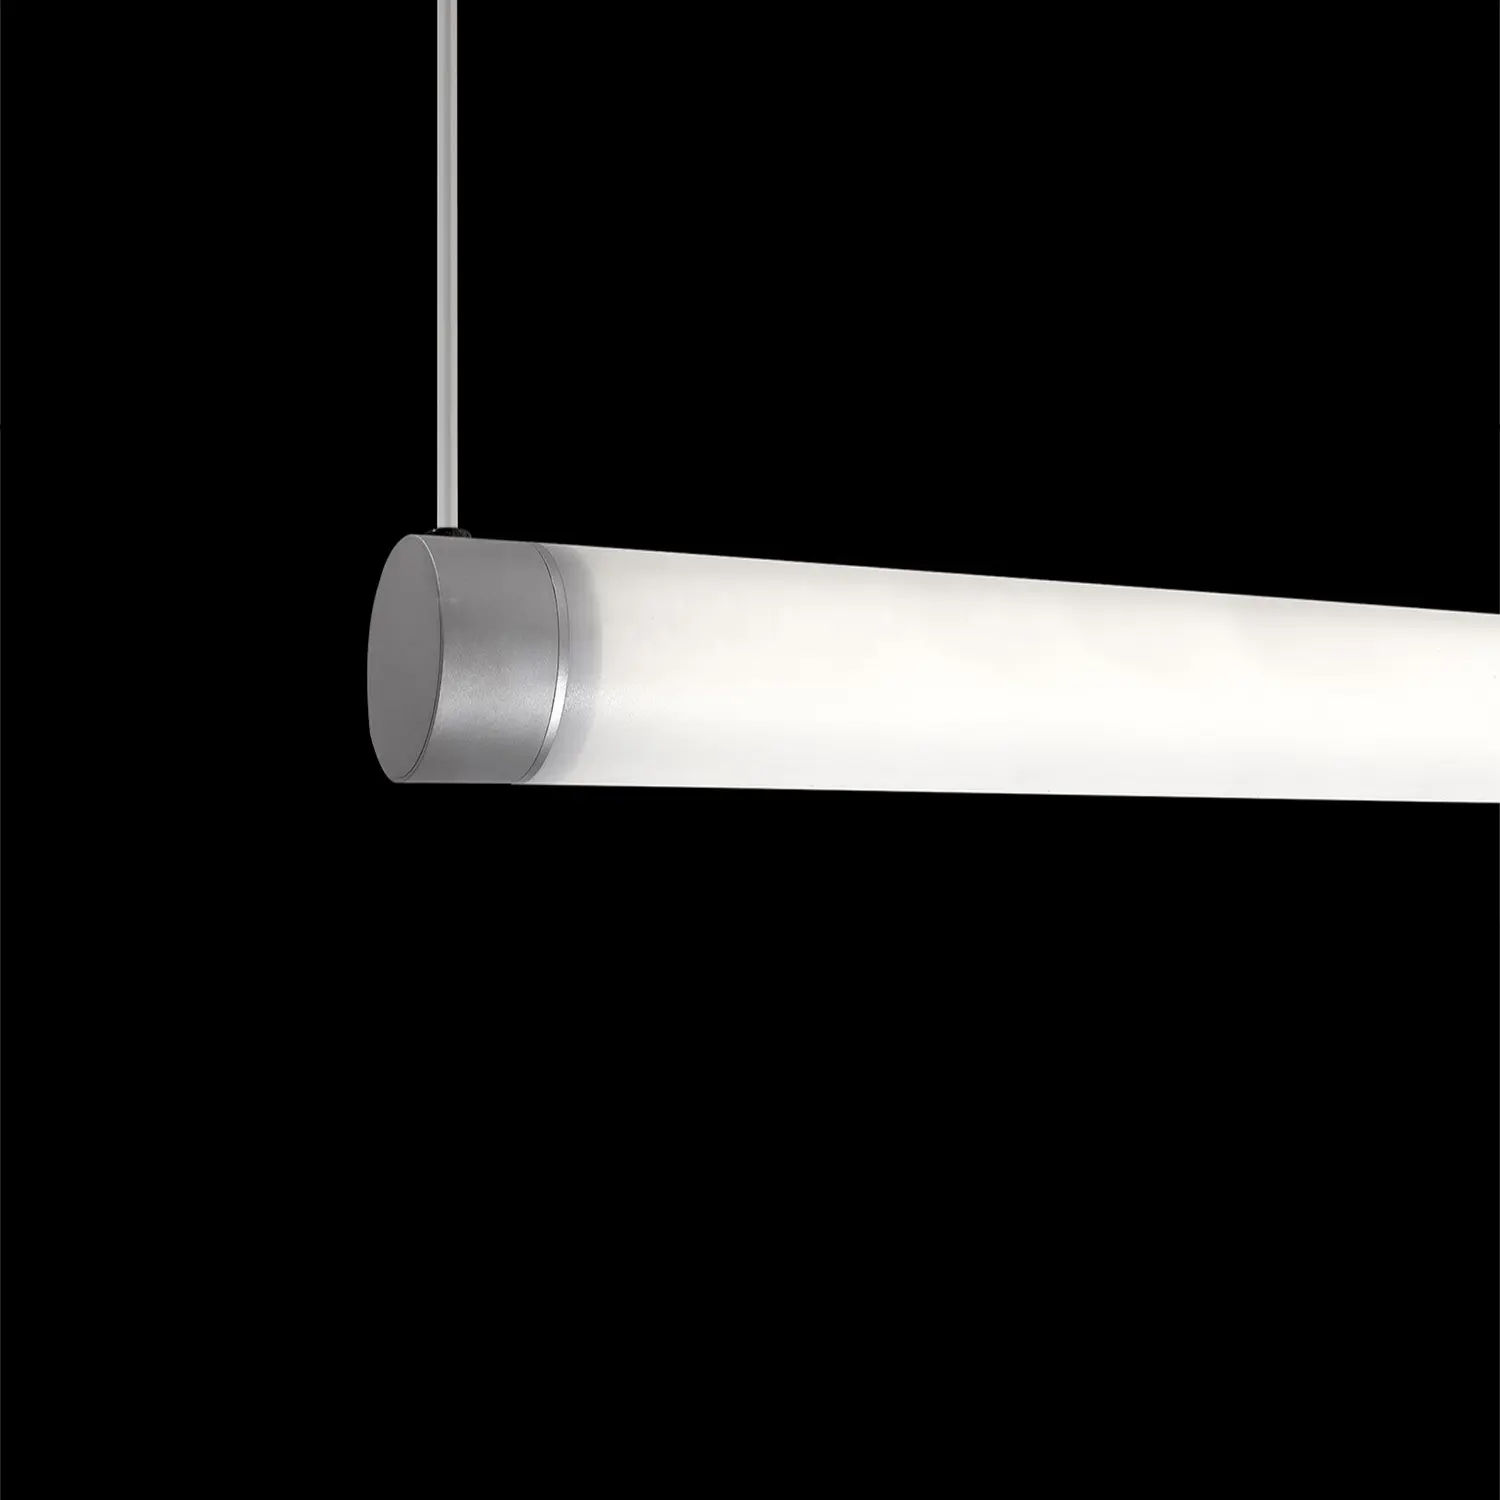 Круглая Световая трубка диаметром 70 мм с белыми акриловыми линзами, архитектурное светодиодное линейное освещение с углом поворота 360 градусов